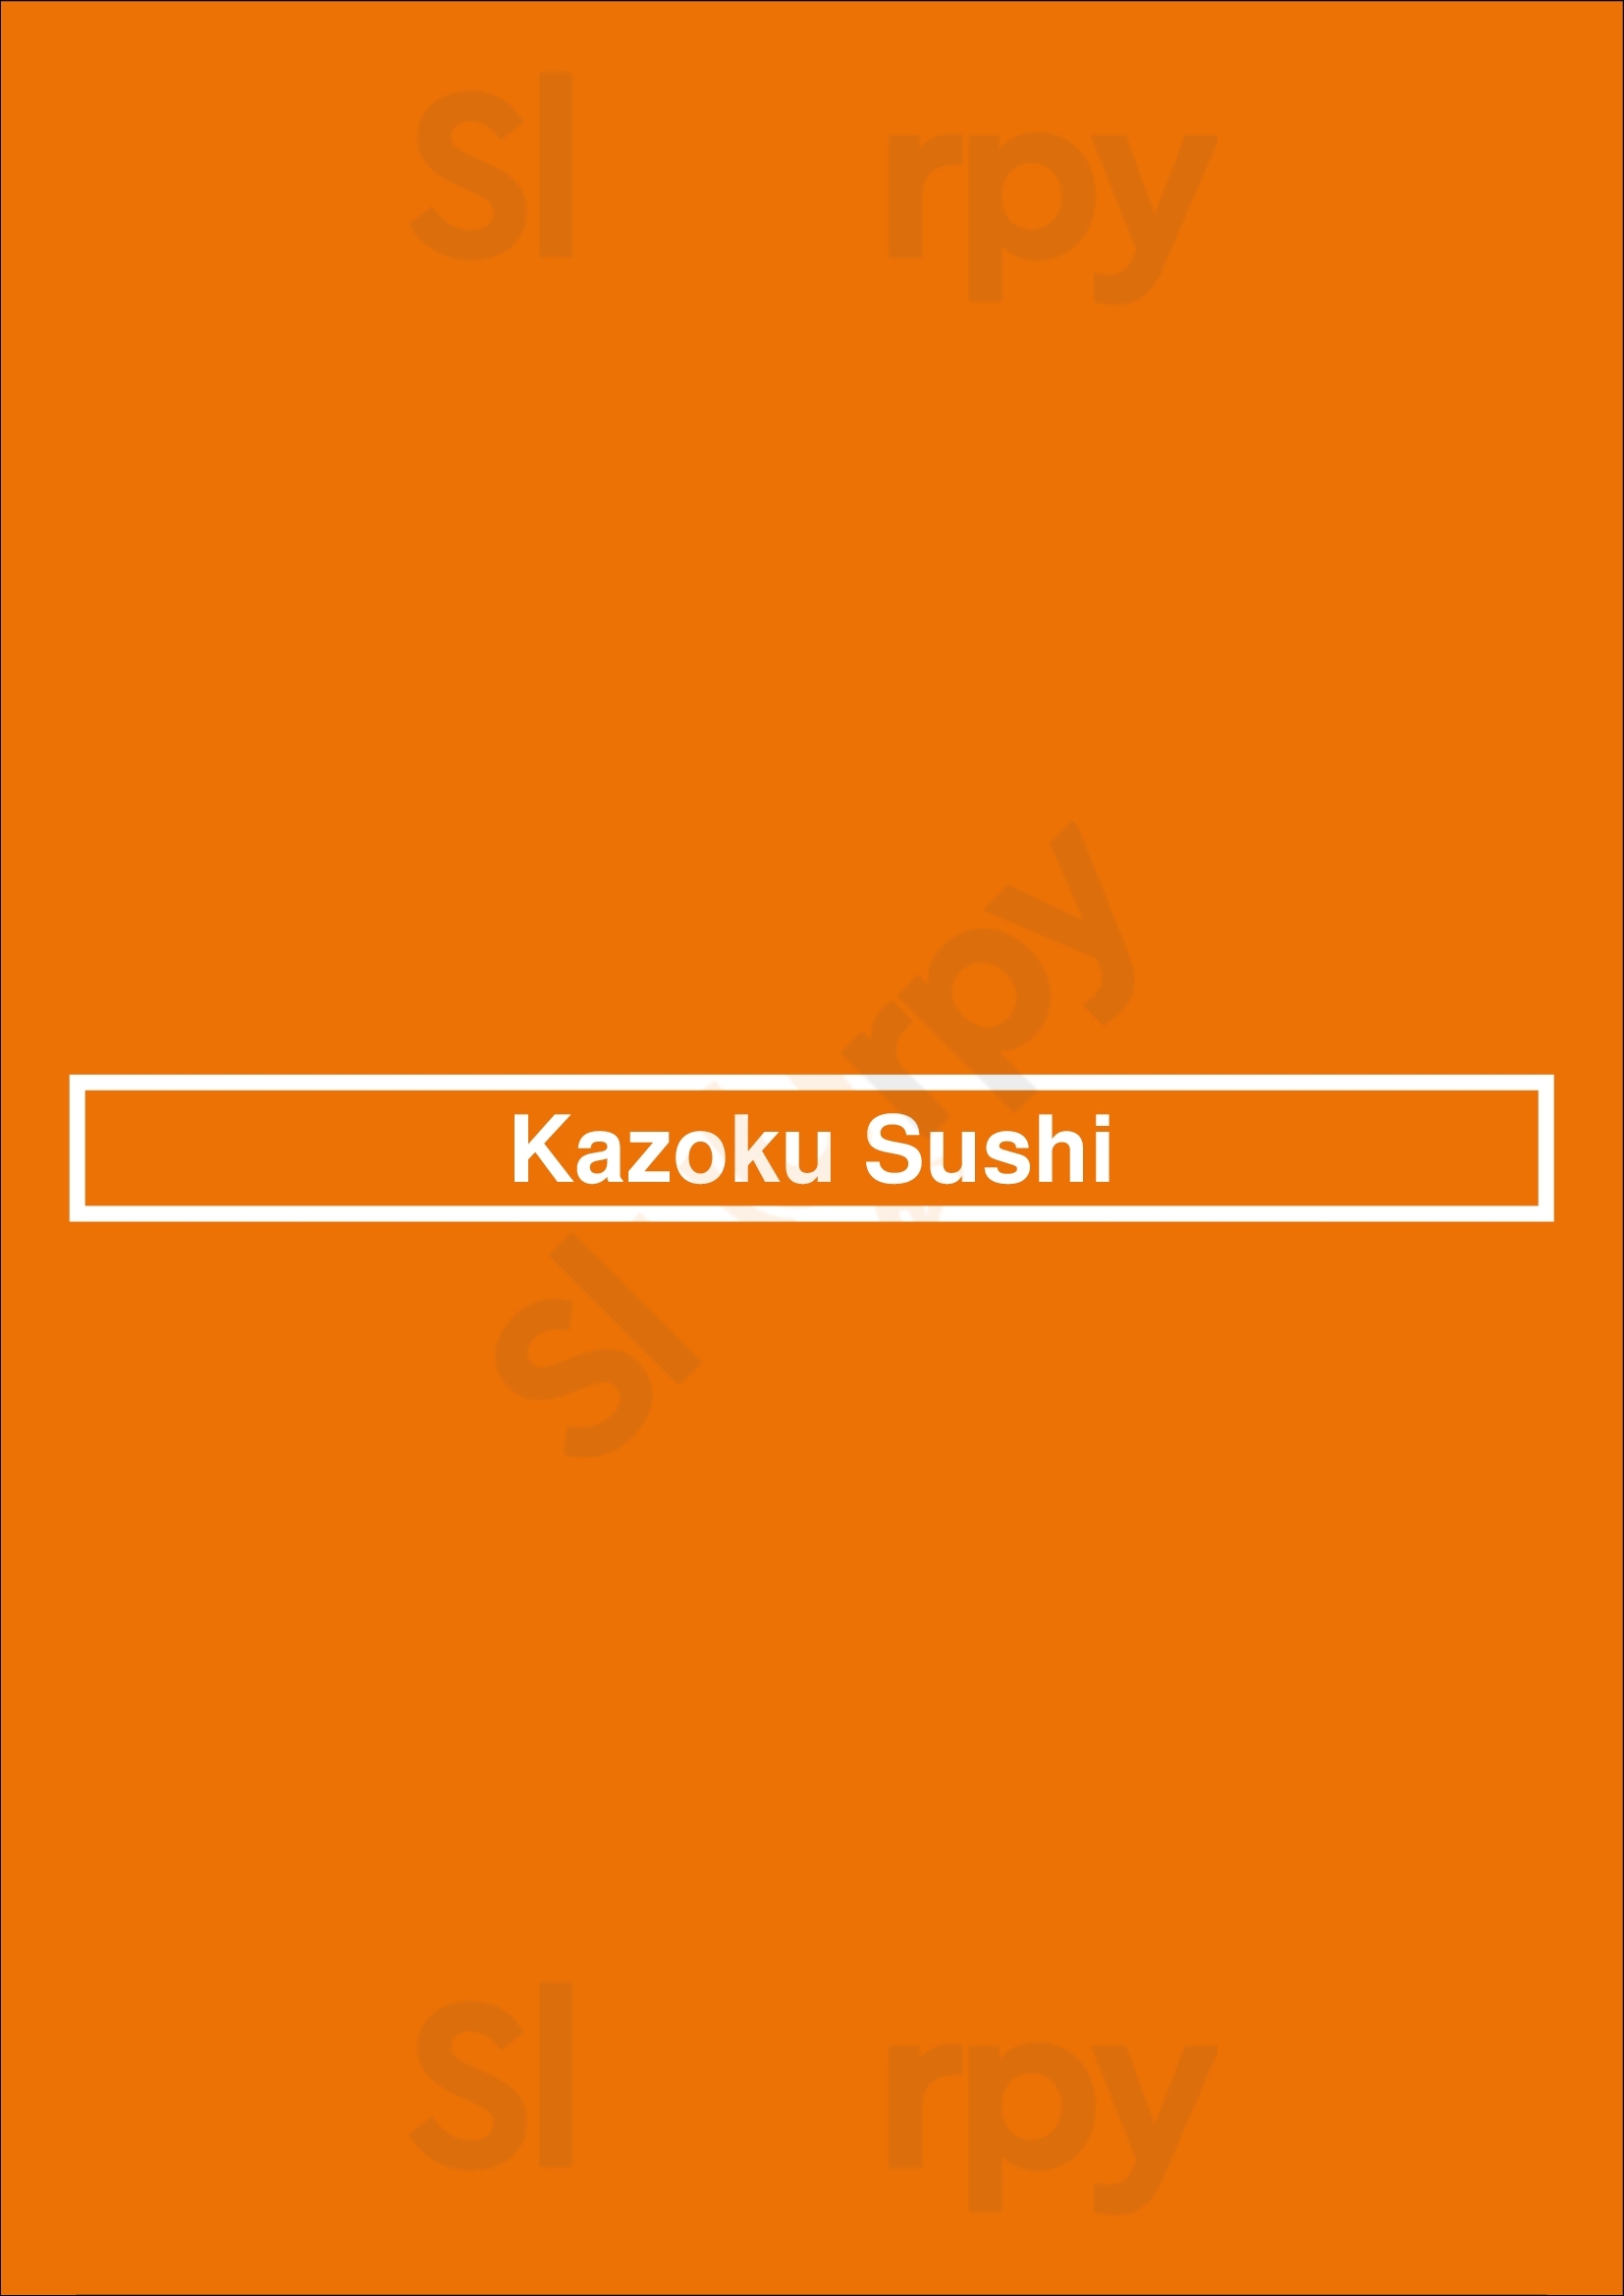 Kazoku Sushi Los Angeles Menu - 1